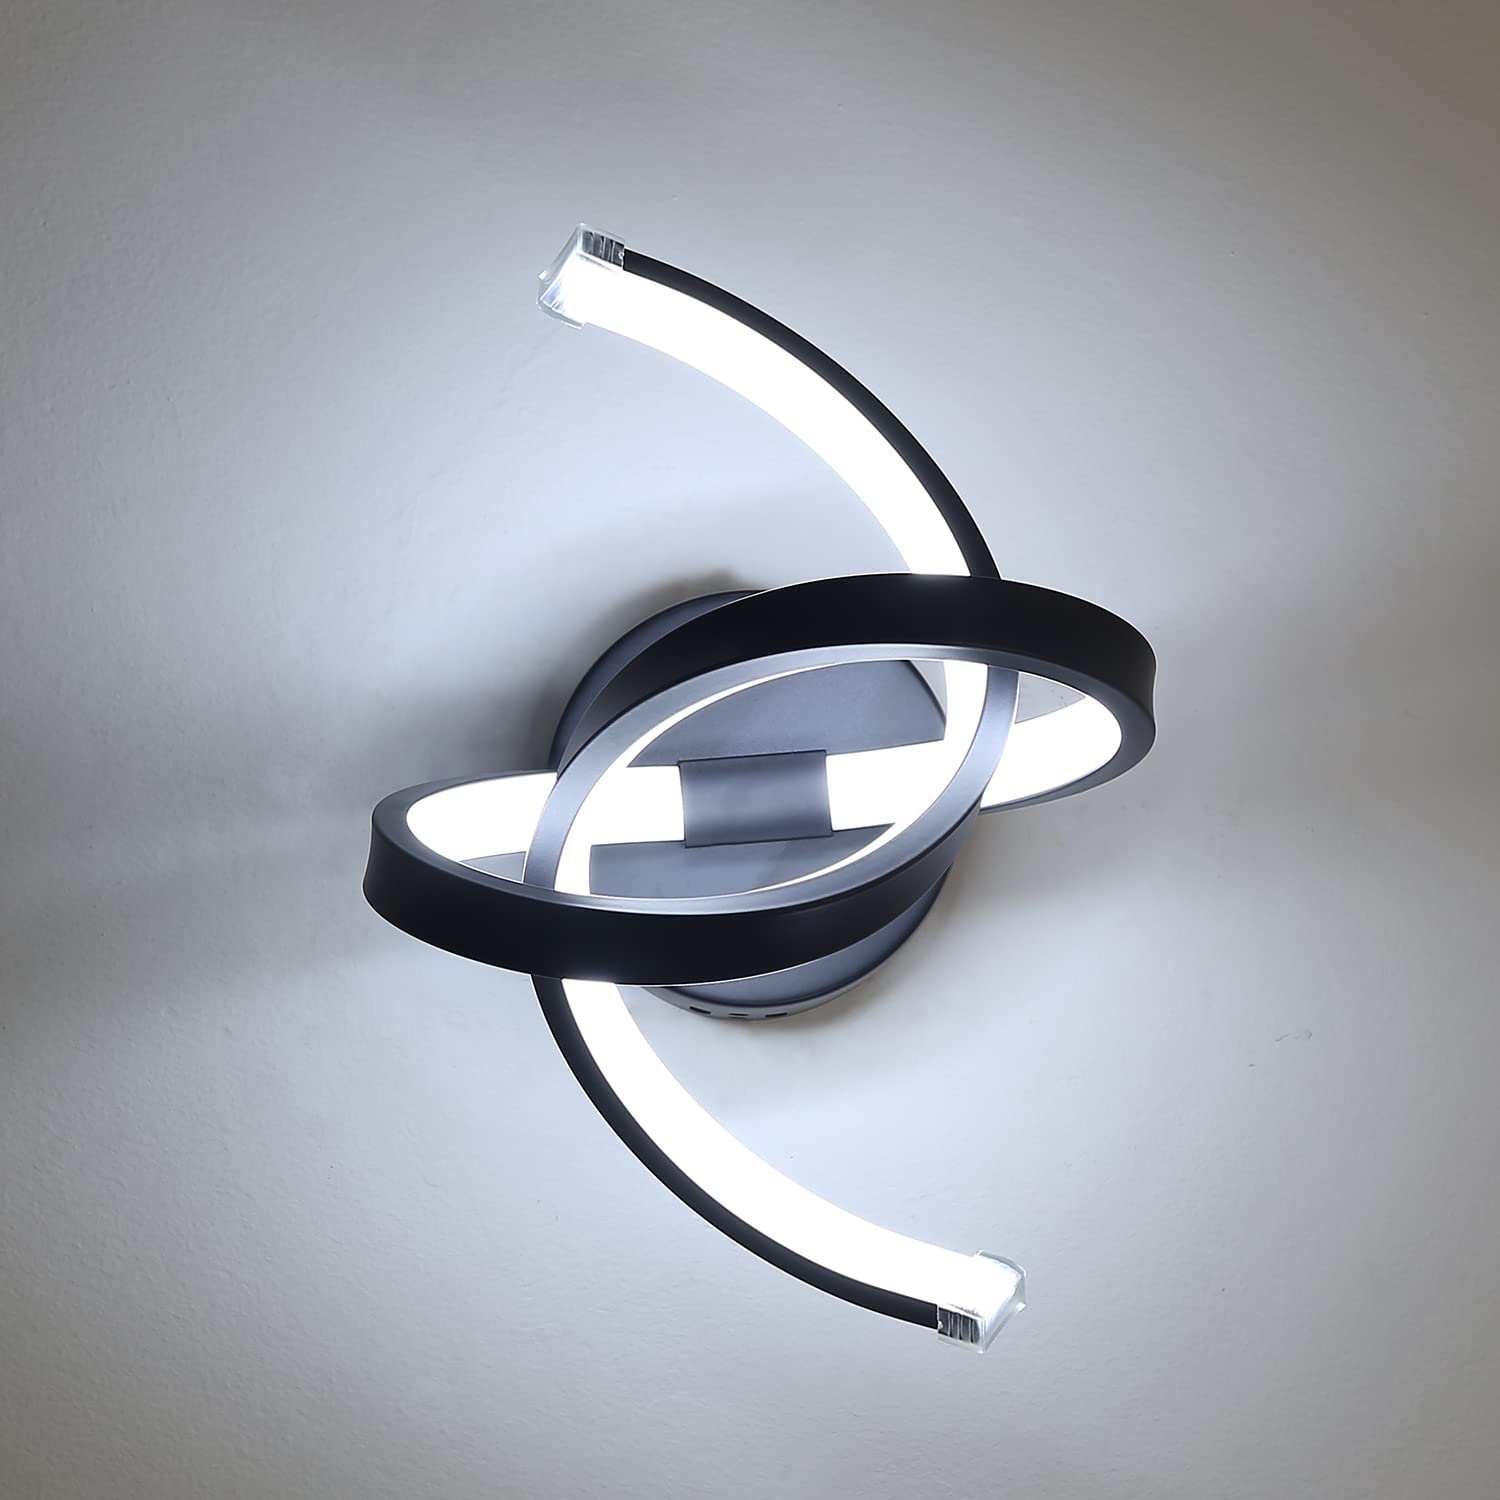 Goeco Moderne LED Wandlampe, 20W, 220V Einfache Persönlichkeit Wave-Design Acryl Wandlampe, 6000K Kaltweißes Licht Wandlampe Spirale, für Schlafzimmer, Wohnzimmer, Flur (Nicht Dimmbar, schwarz)